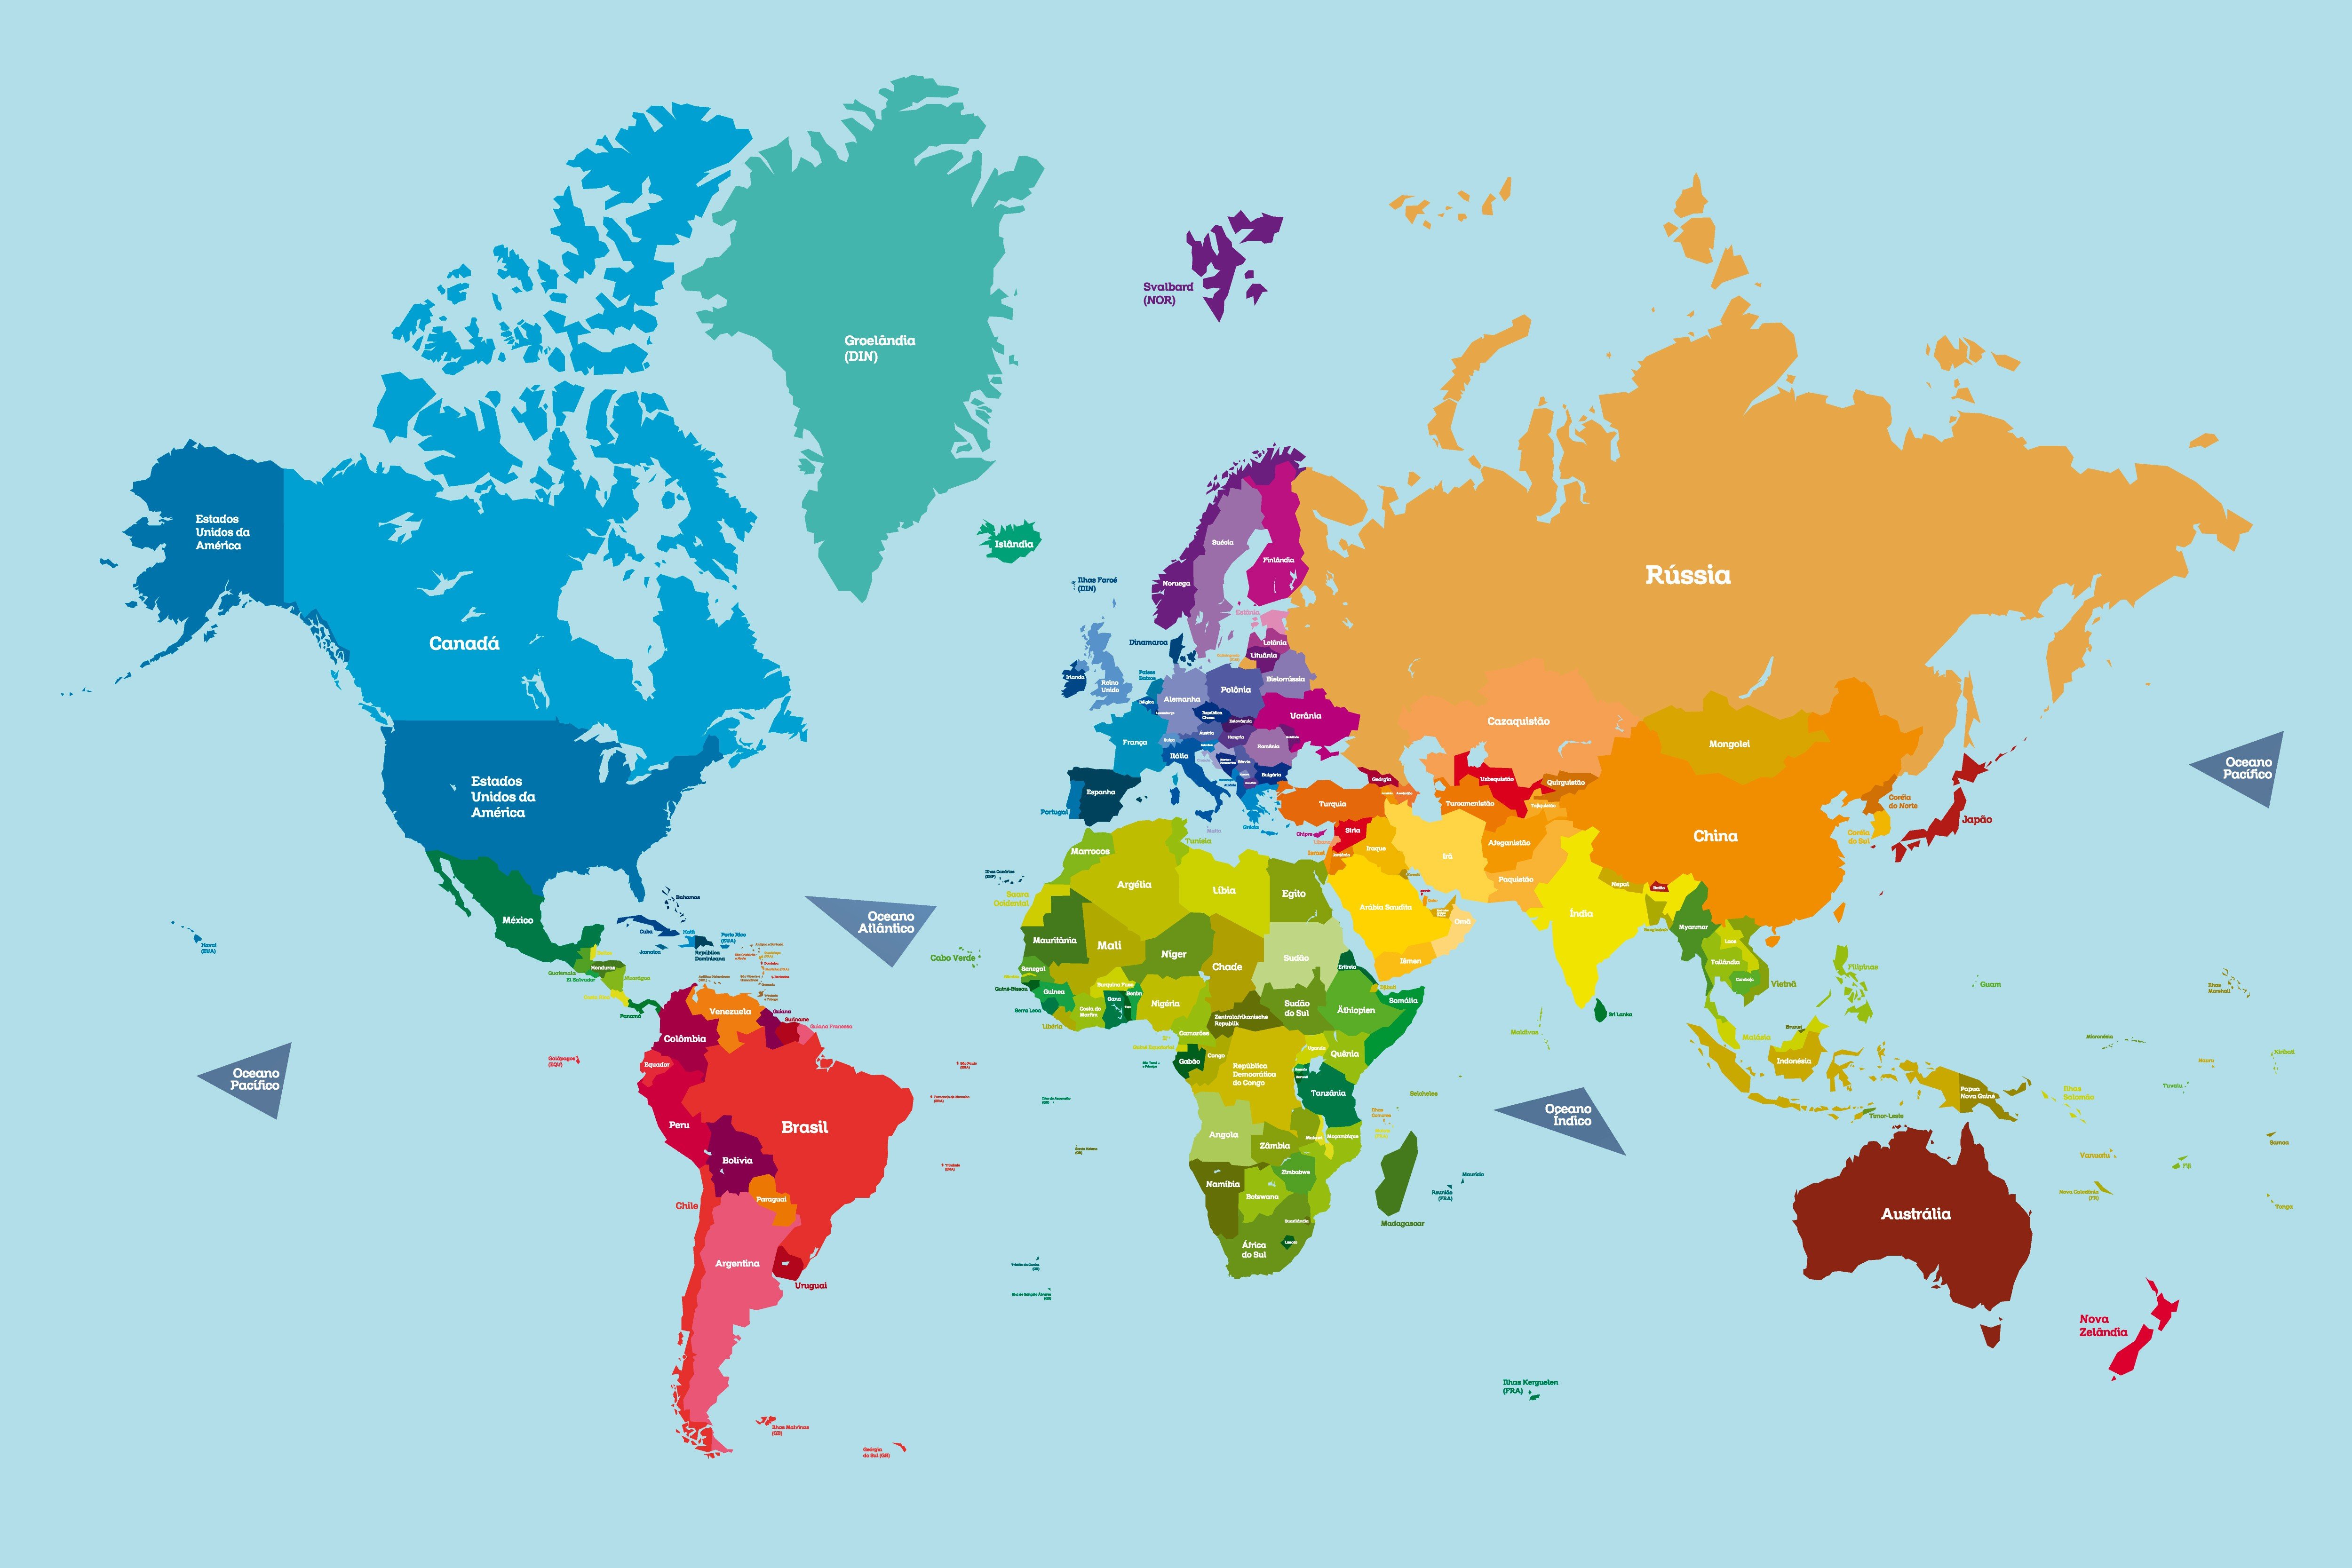 Mapa-mundo colorido com o nome dos países e dos oceanos.